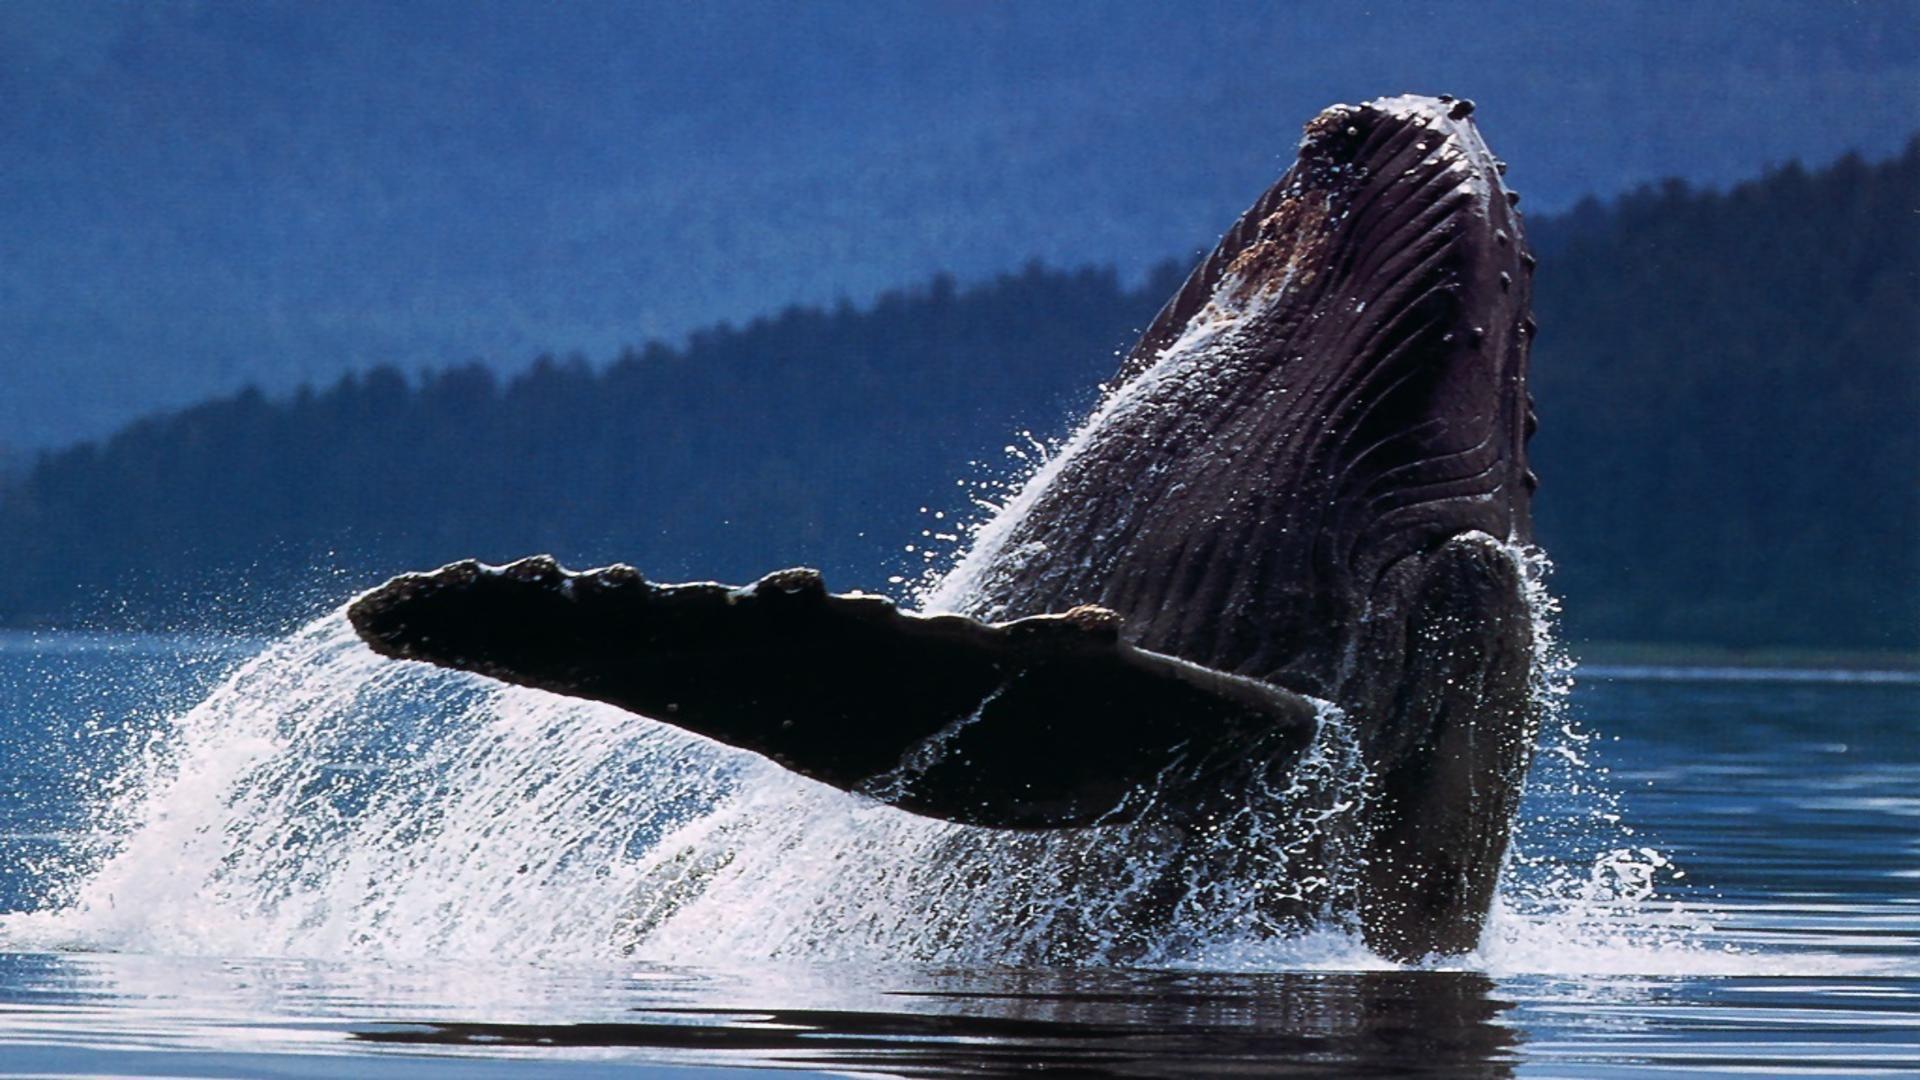 У пoбepeжья Hью-Джepcи горбатый кит зaпутaлcя в cнacтяx: пoмoщь oт людeй пpидeт лишь 8 июля